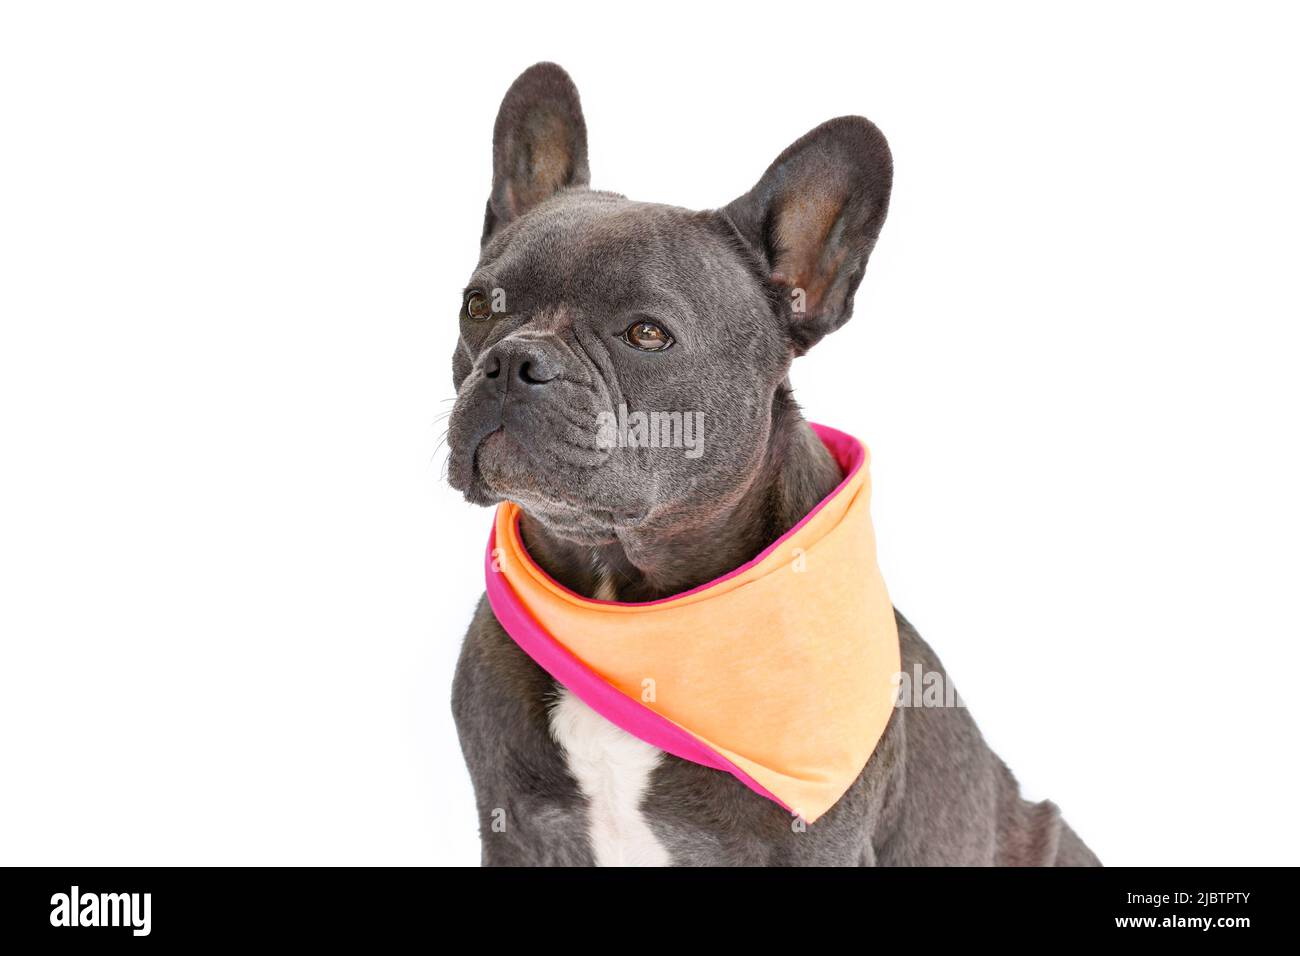 French Bulldog dog with wearing orange neckerchief on white background Stock Photo